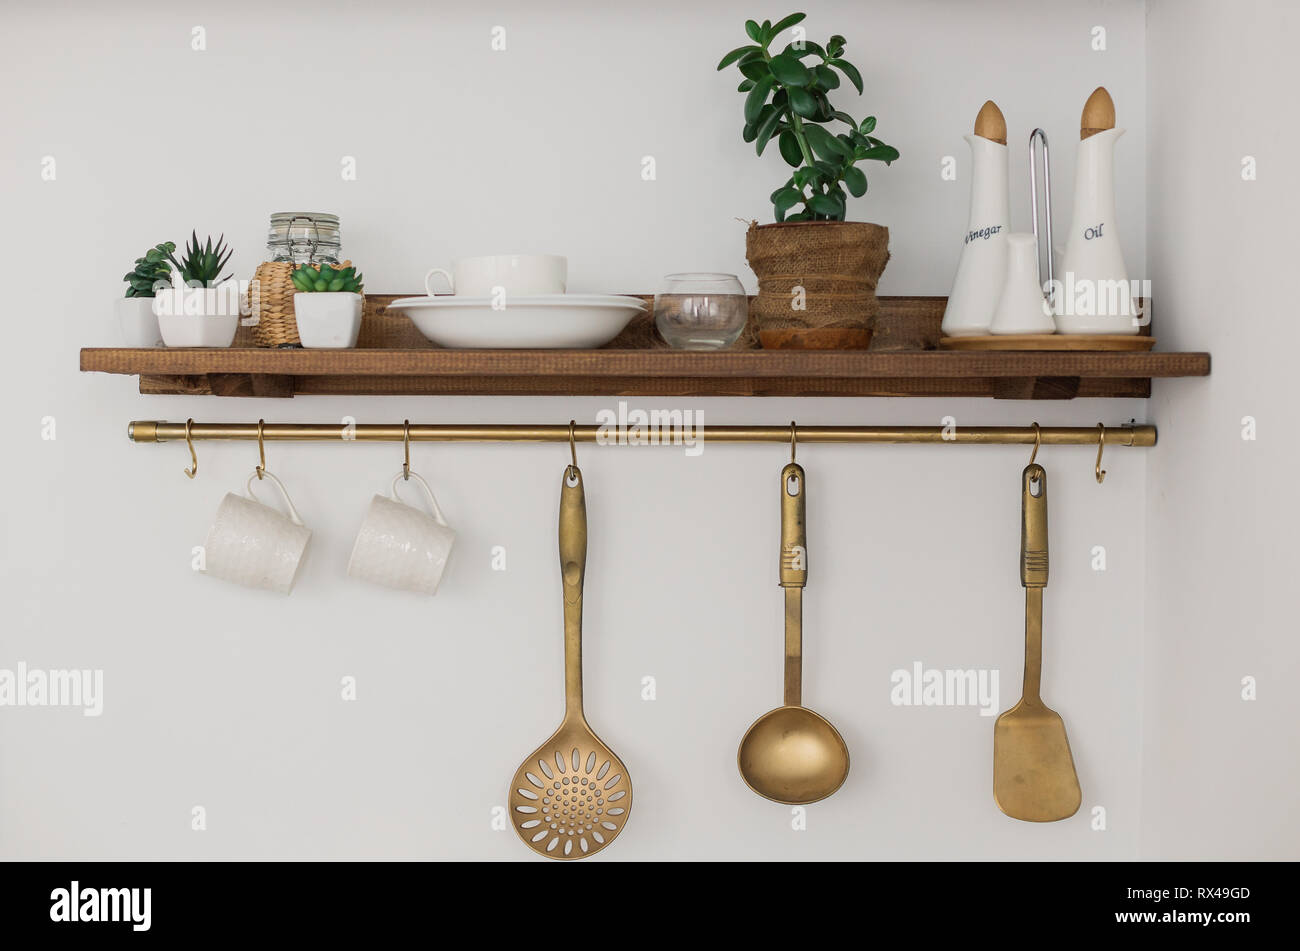 Küche Ecke Regal mit Löffel schaufeln und Gewürzen Stockfotografie - Alamy